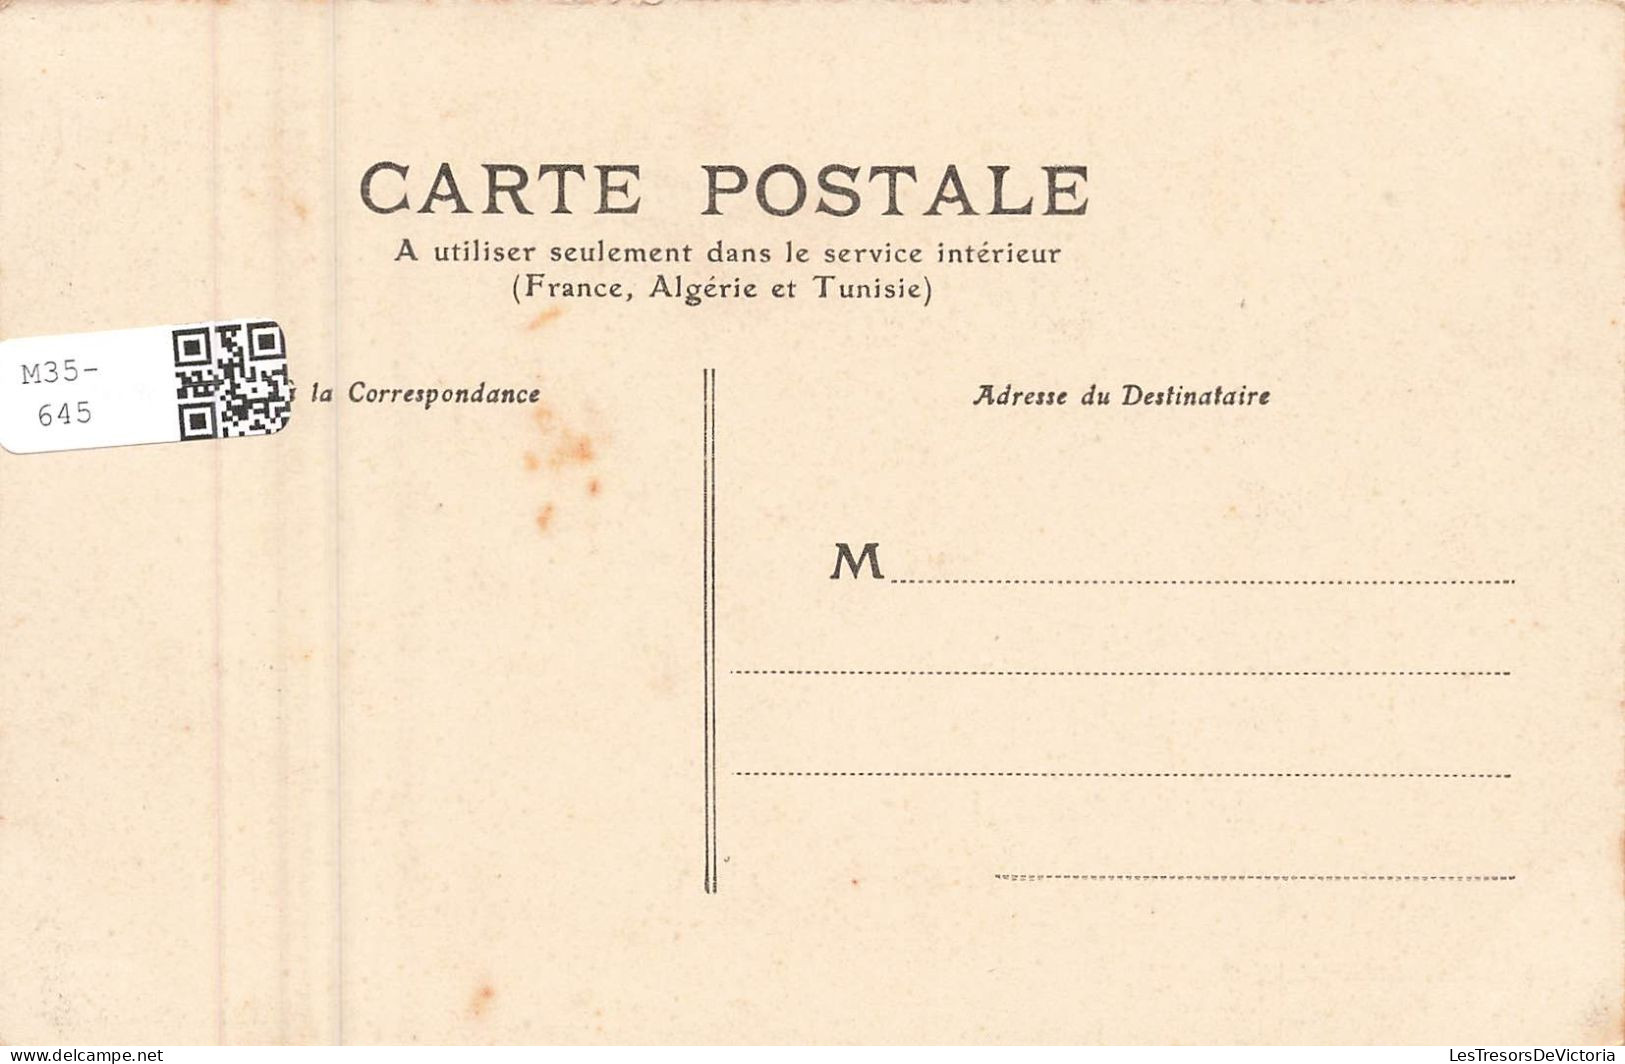 FRANCE - Palavas - La Passerelle - Carte Postale Ancienne - Palavas Les Flots